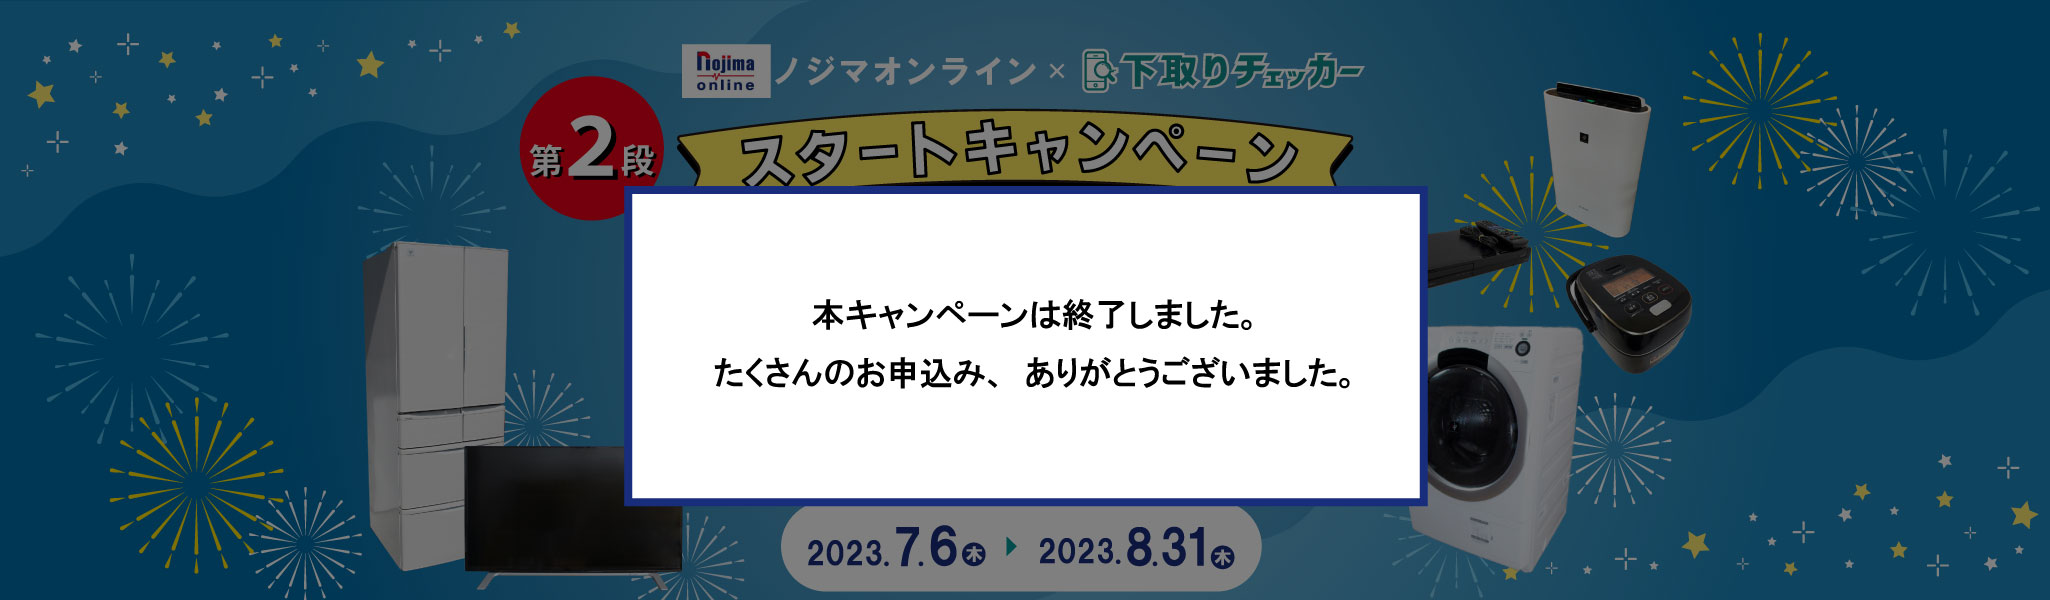 ノジマオンライン × 下取りチェッカー スタートアップキャンペーン